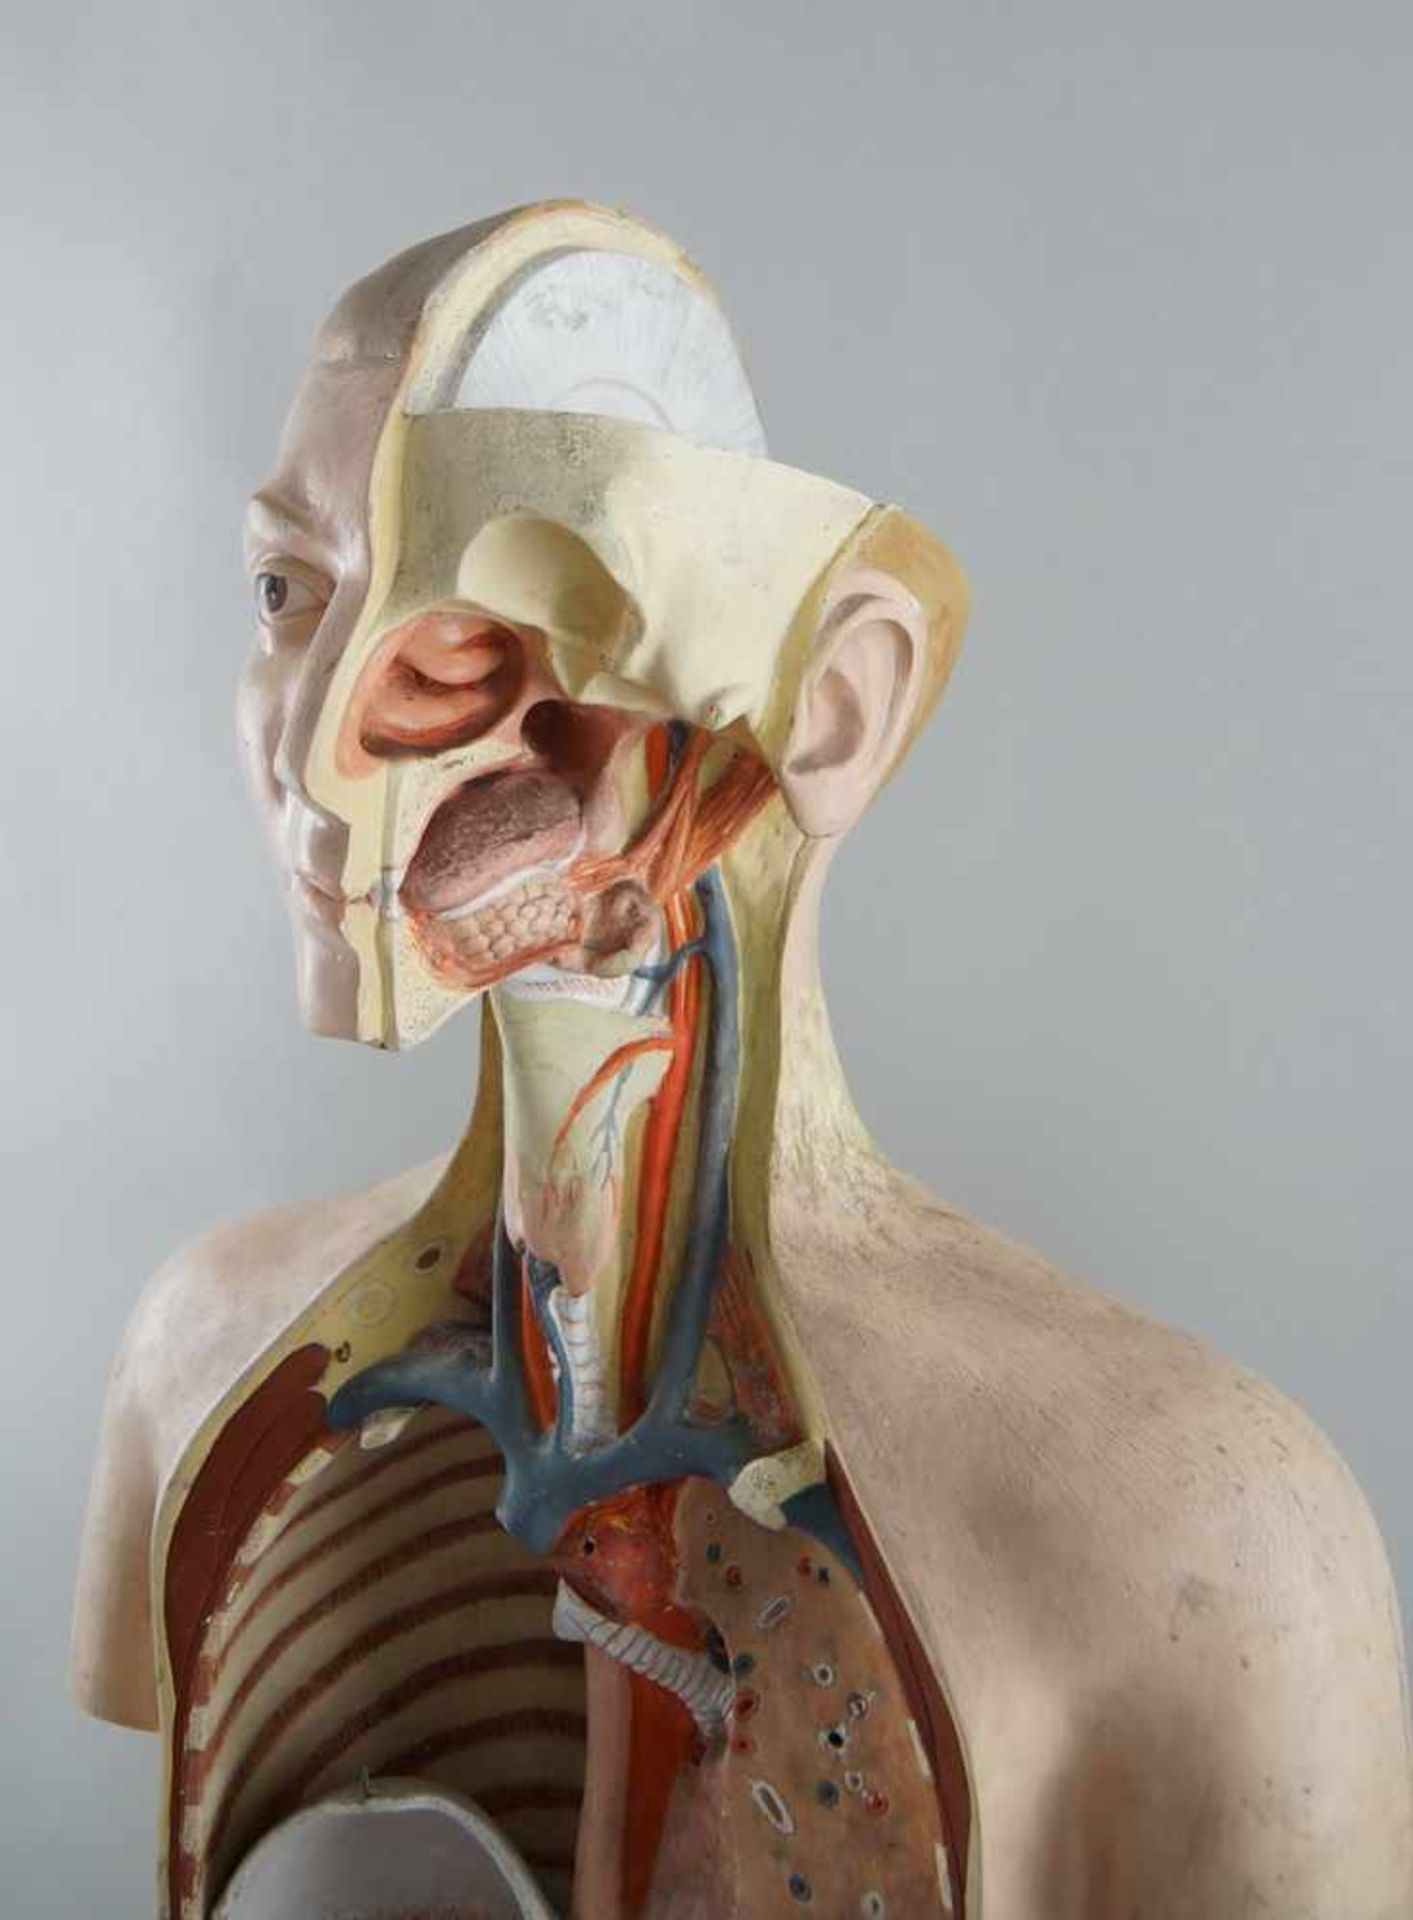 Anatomisches Modell eines menschlichen Oberkörpers mit verschiedenen Organen,Altersspuren/ - Bild 3 aus 7